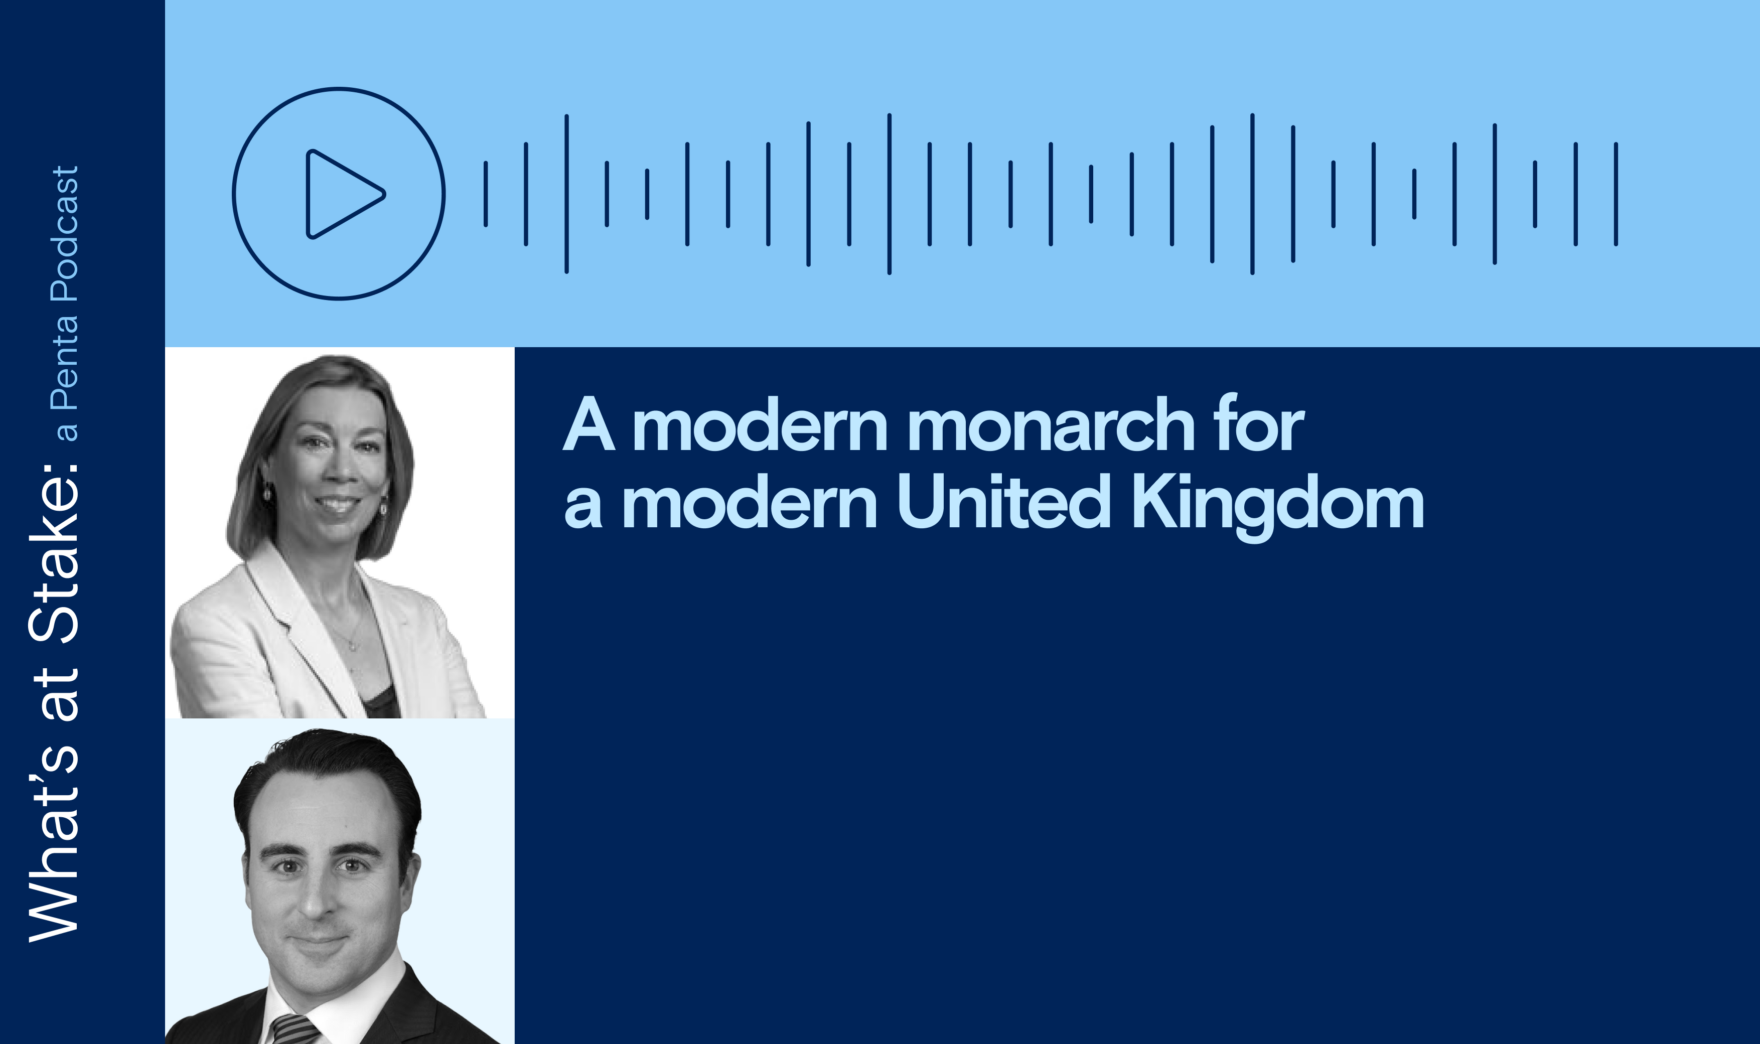 A modern monarch for a modern United Kingdom